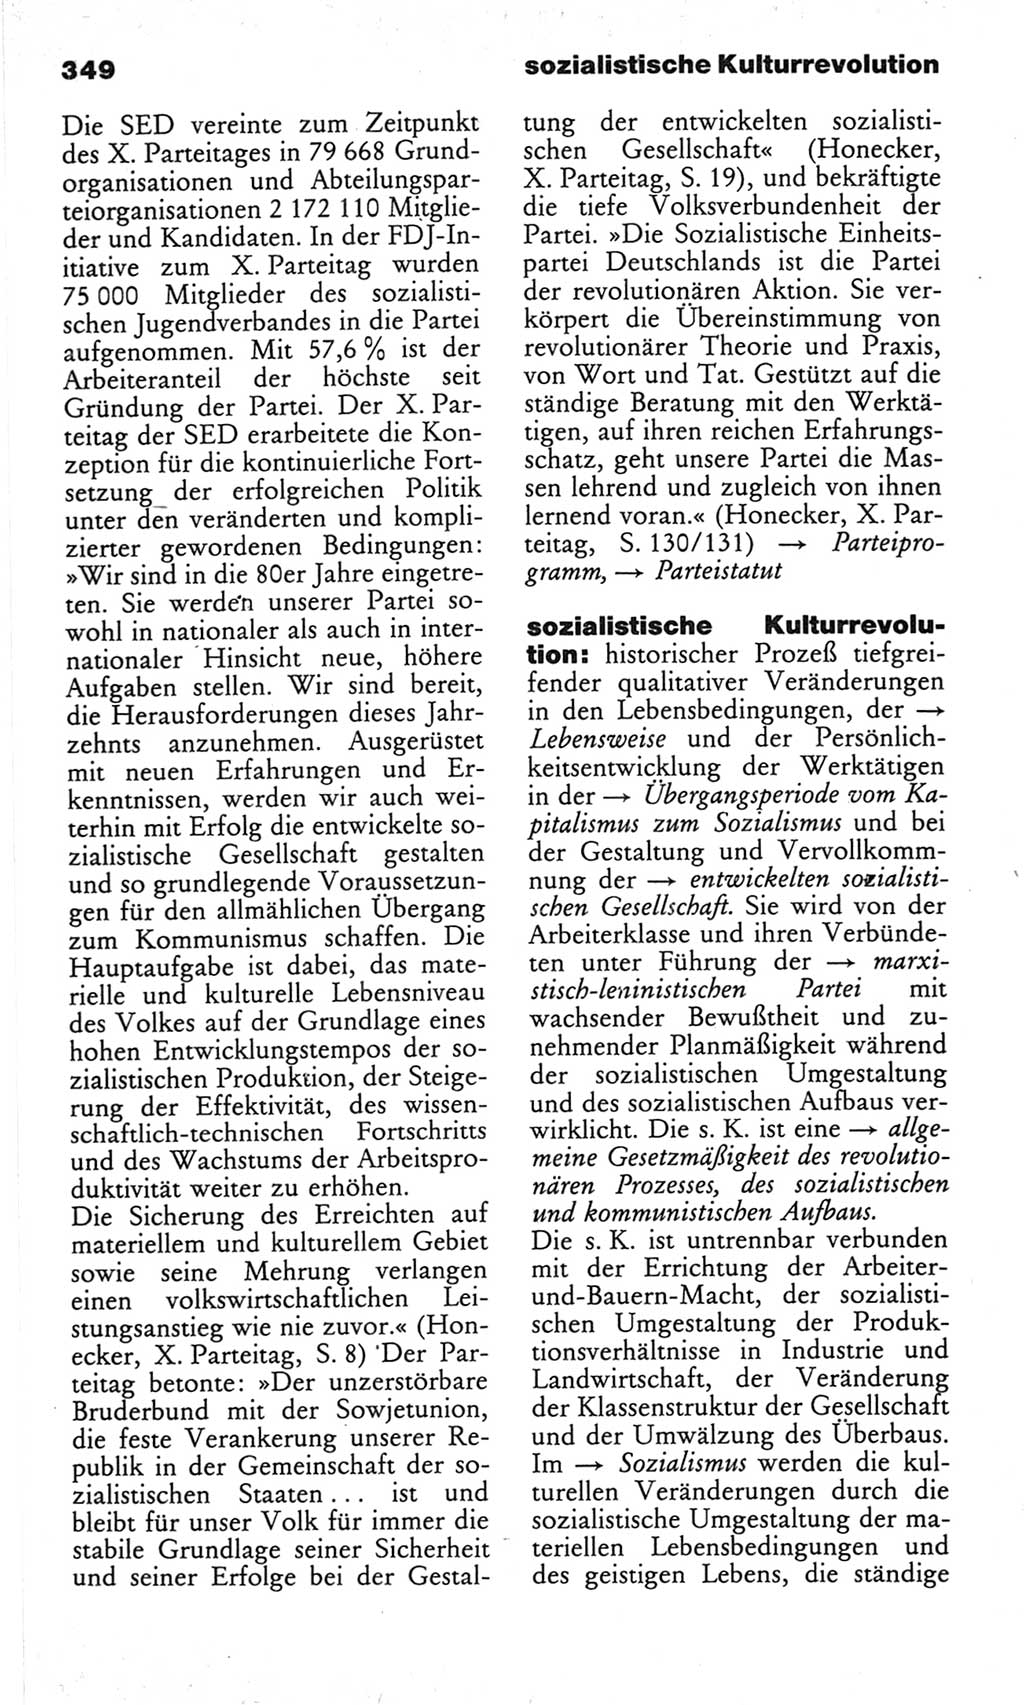 Wörterbuch des wissenschaftlichen Kommunismus [Deutsche Demokratische Republik (DDR)] 1982, Seite 349 (Wb. wiss. Komm. DDR 1982, S. 349)